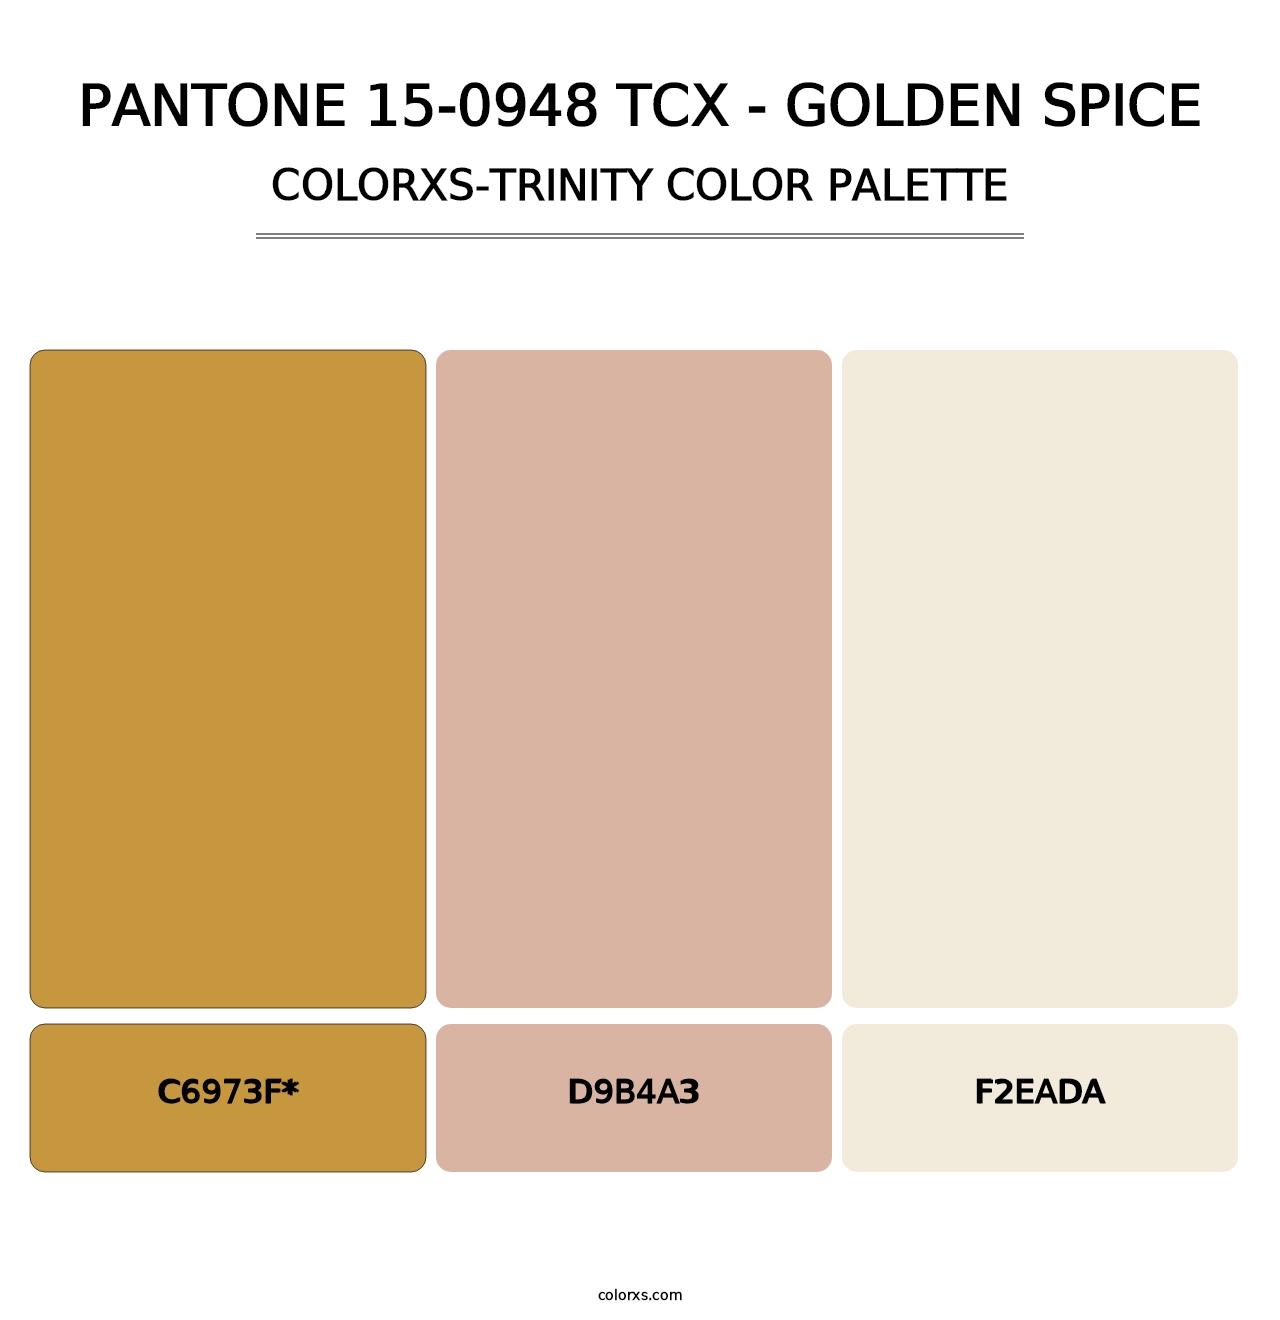 PANTONE 15-0948 TCX - Golden Spice - Colorxs Trinity Palette